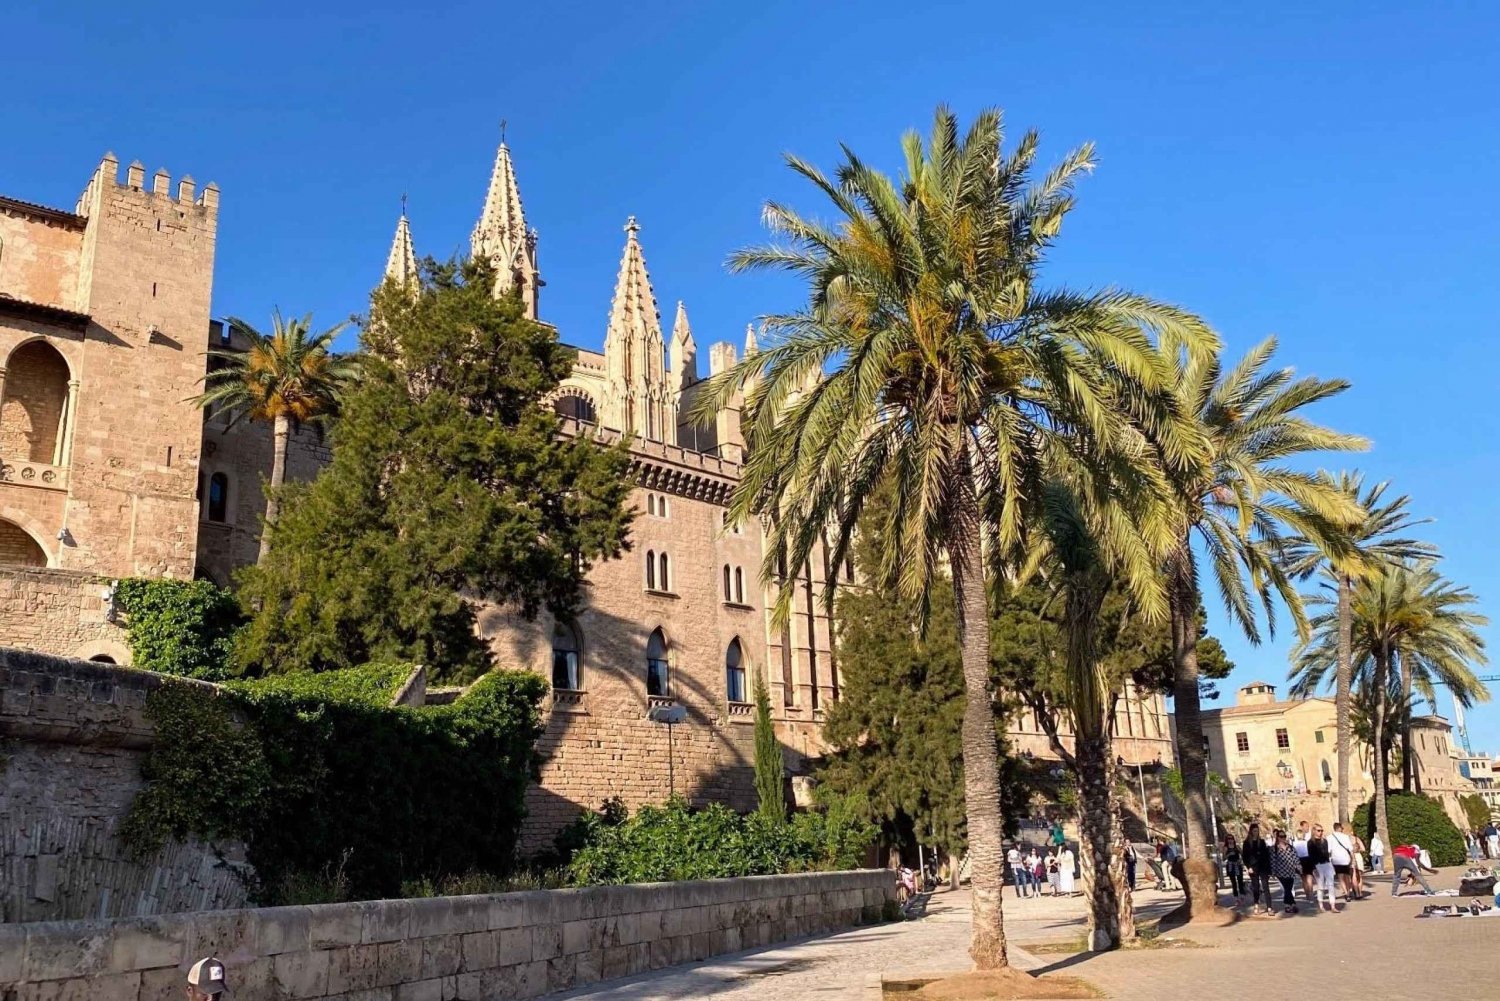 Palma: Wandeling met gids door de steegjes van de oude stad